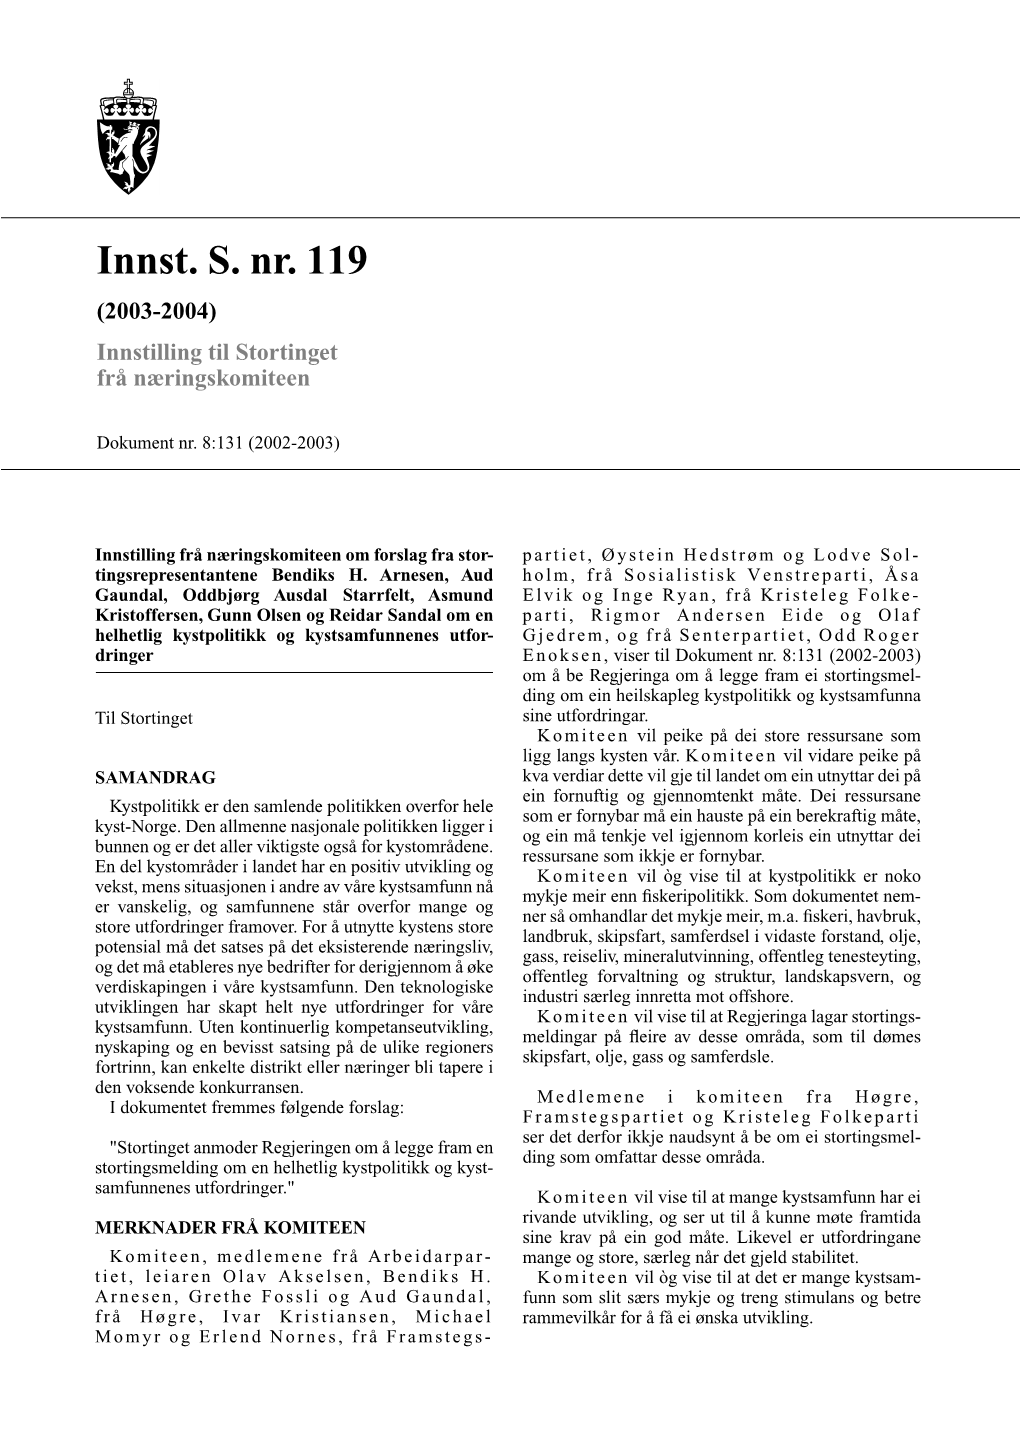 Innst. S. Nr. 119 (2003-2004) Innstilling Til Stortinget Frå Næringskomiteen